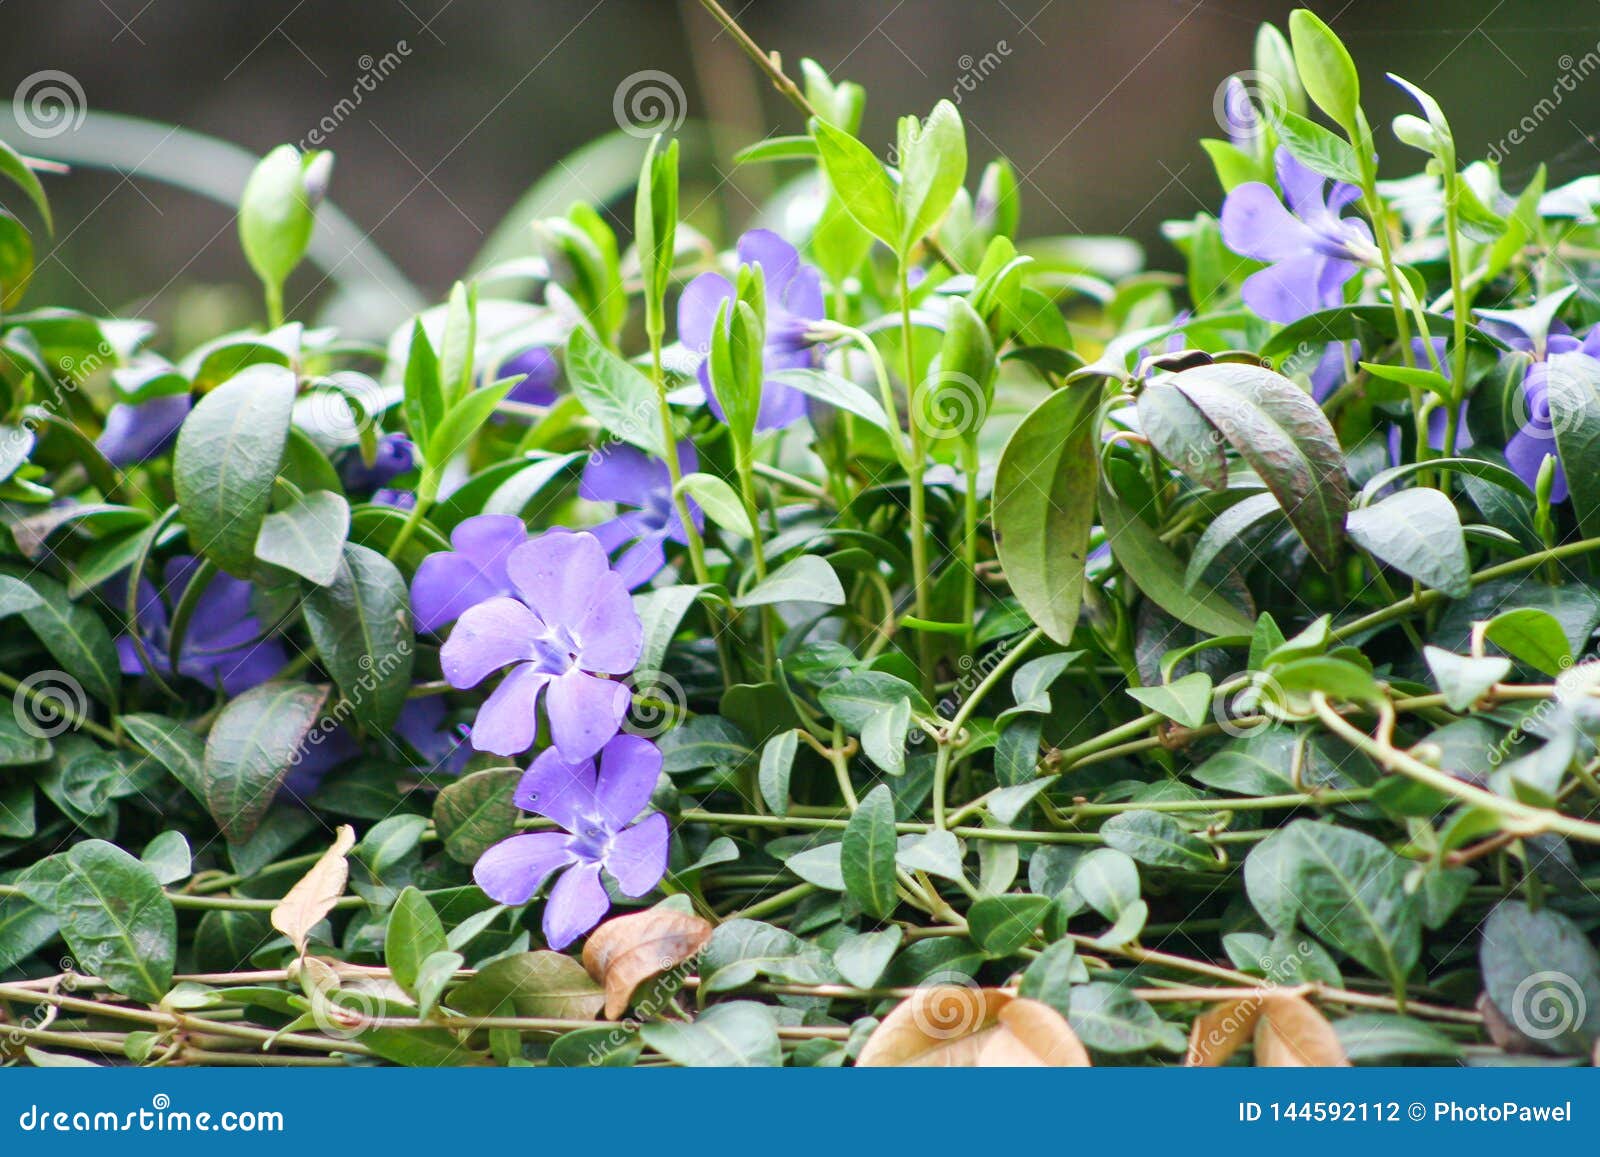 Petites Fleurs Violettes à L'arrière-plan De Jardin Photo stock - Image du  couleur, flore: 144592112